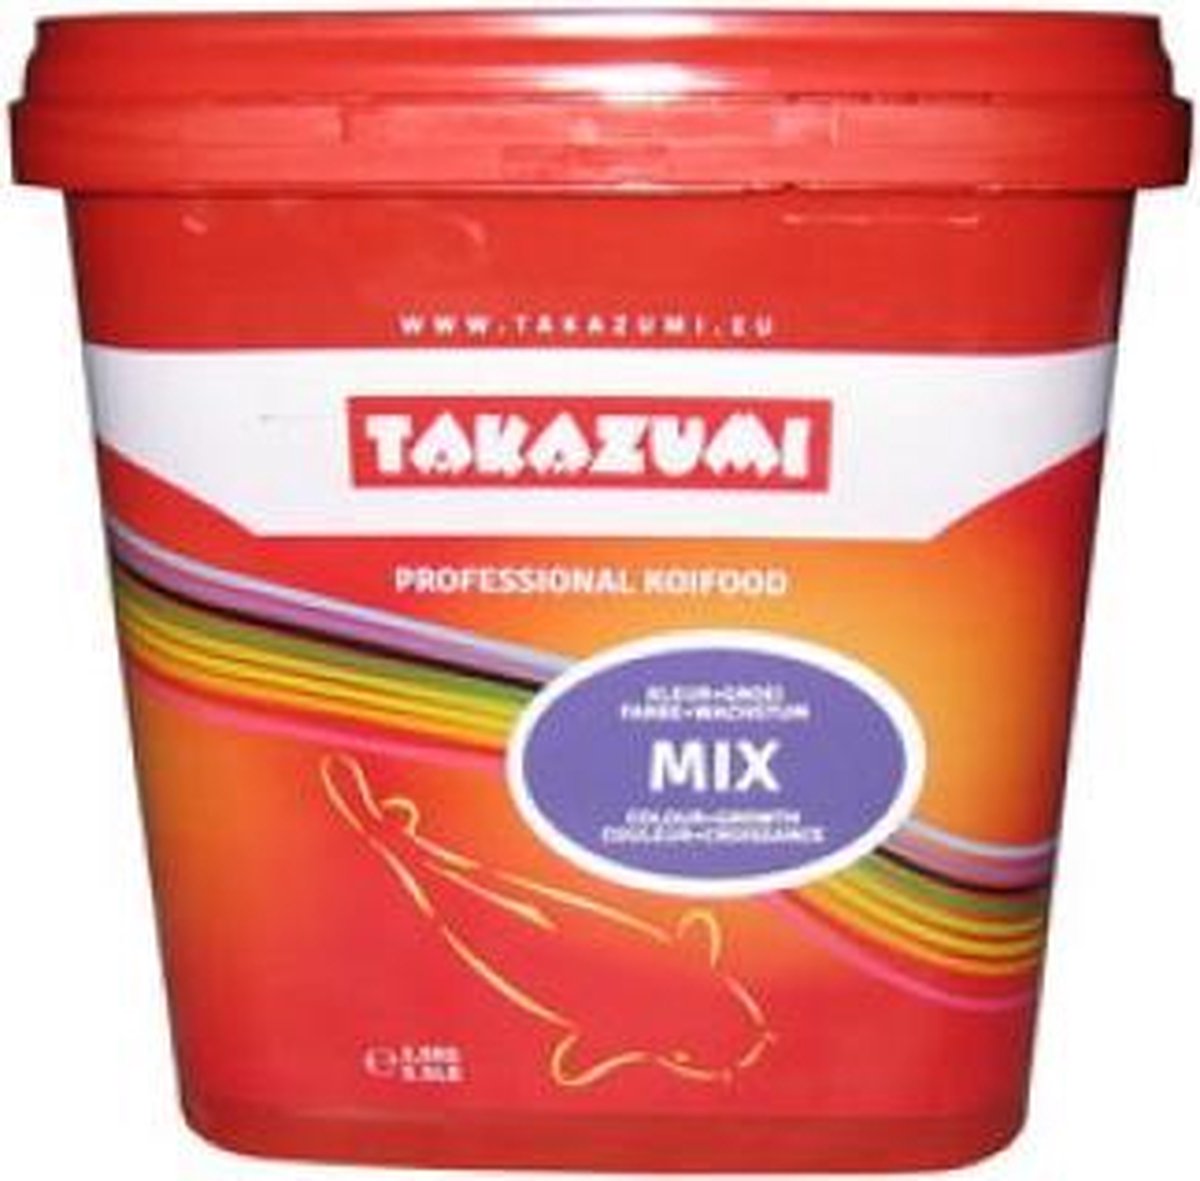 Takazumi Mix - 1 kg